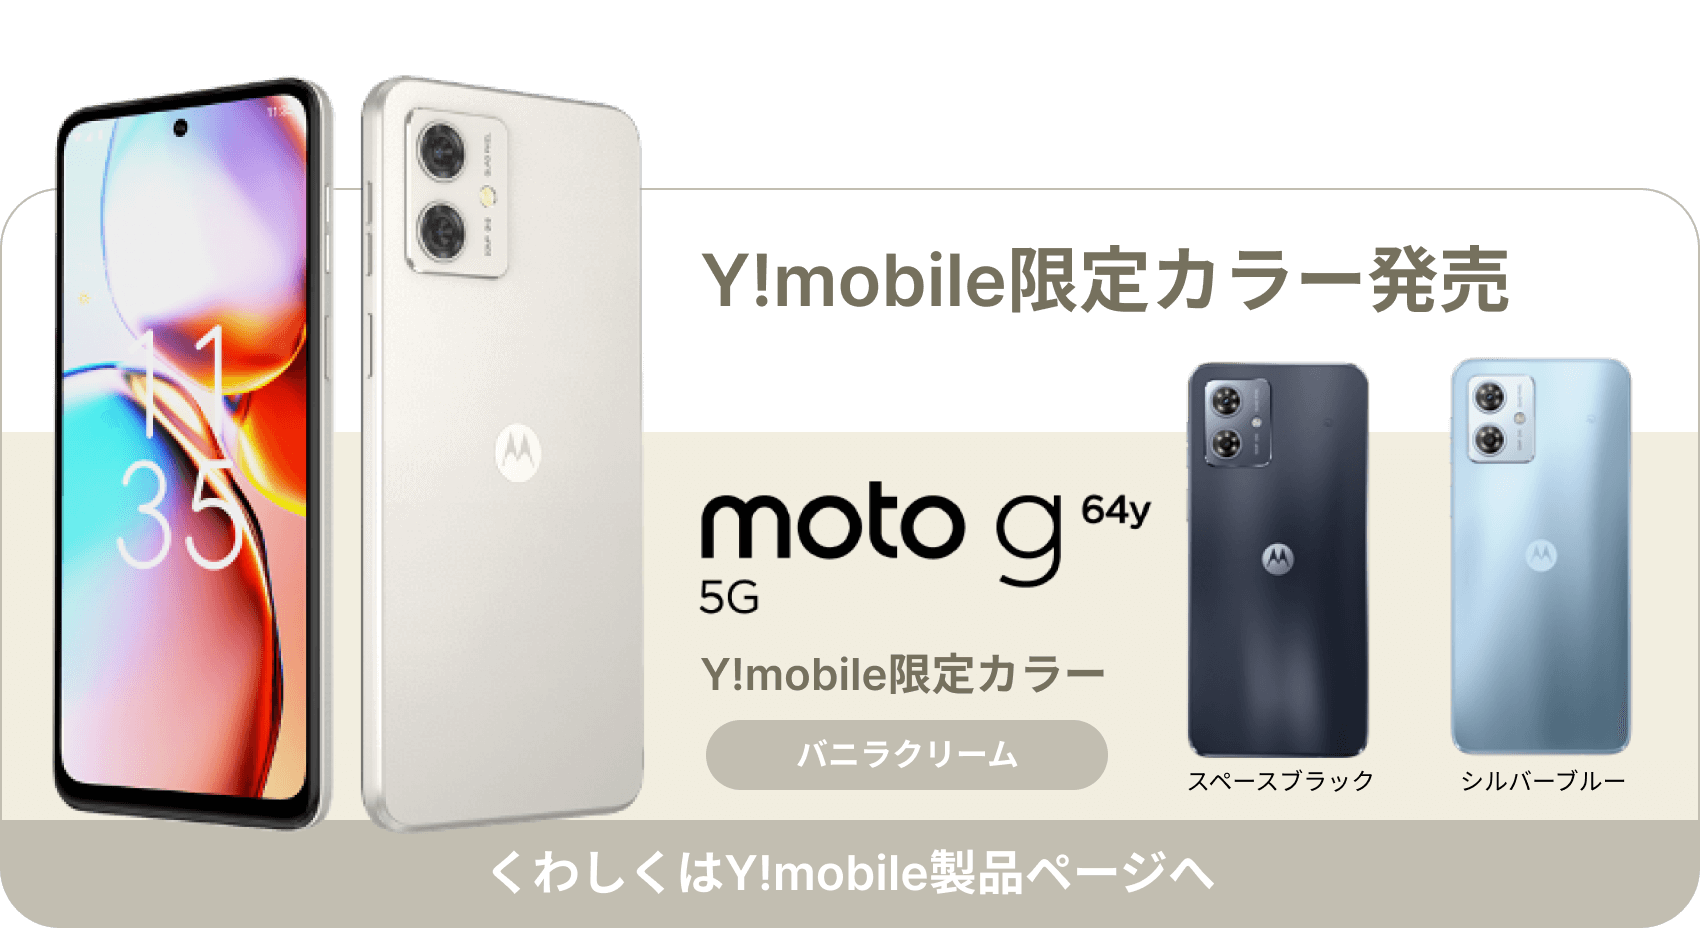 Y!mobile限定カラー発売/バニラクリーム/くわしくはY!mobile製品ページへ